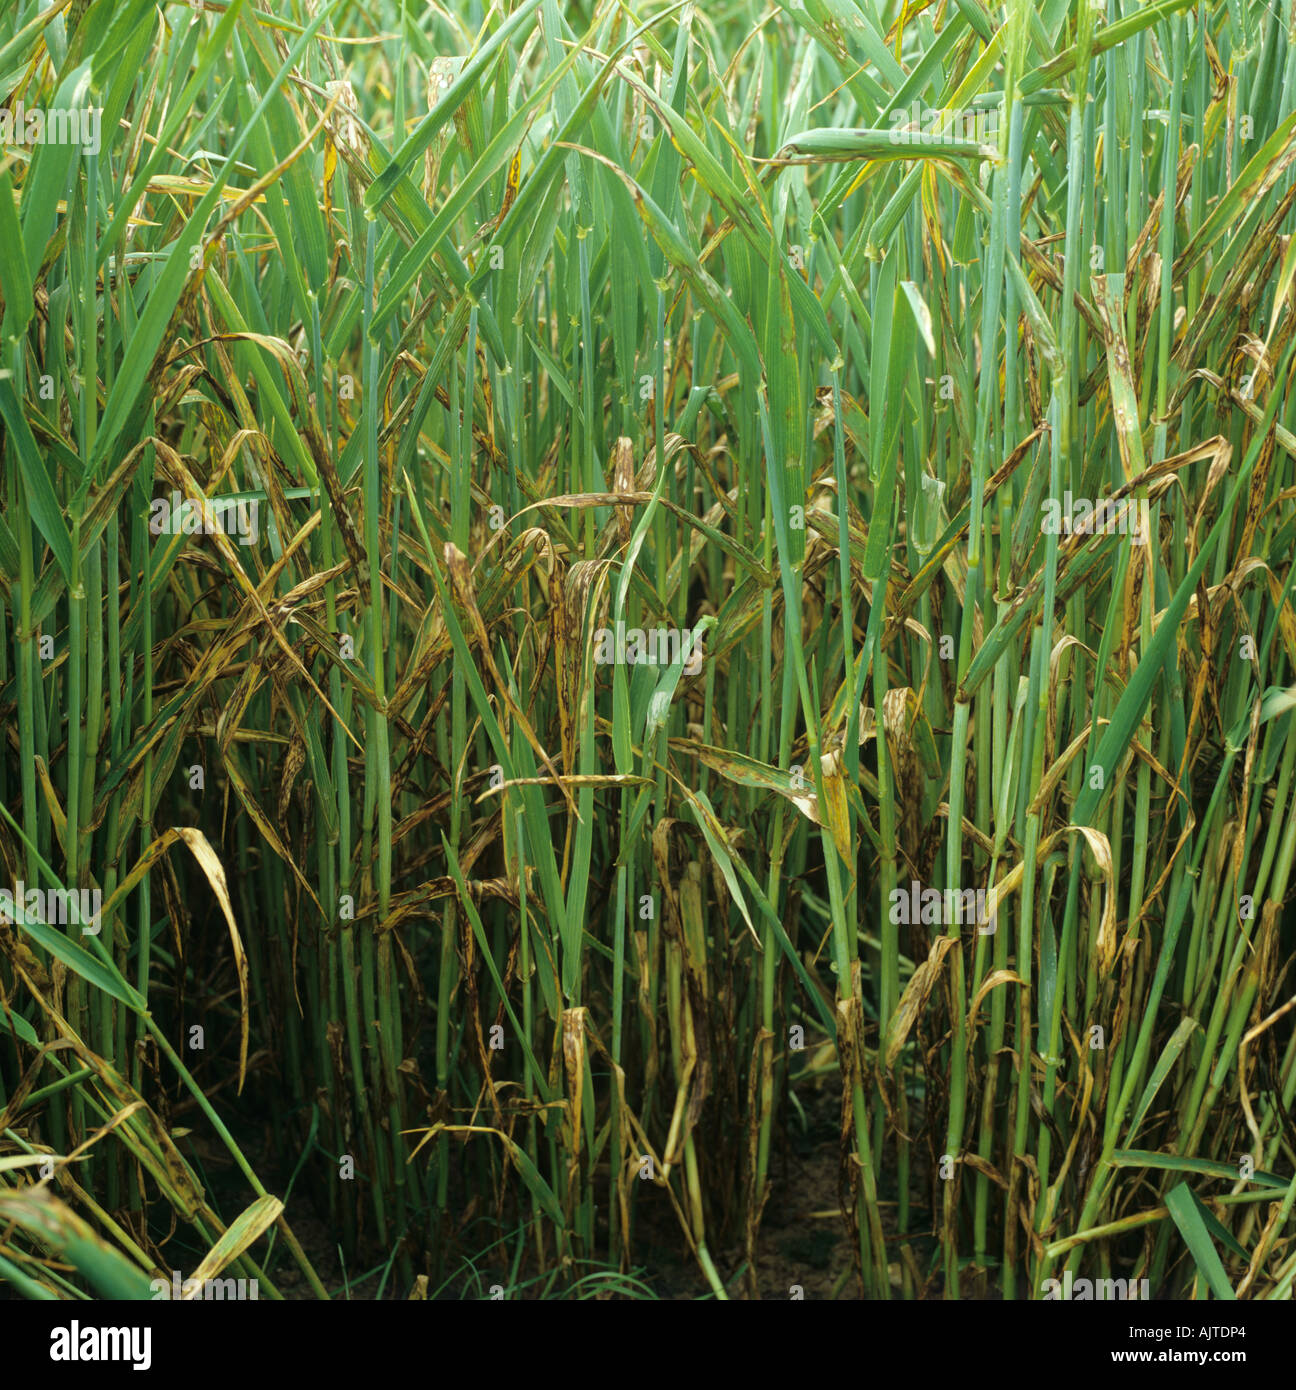 Barley leaf blotch or leaf scald Rhynchosporium secalis infection on barley crop Stock Photo